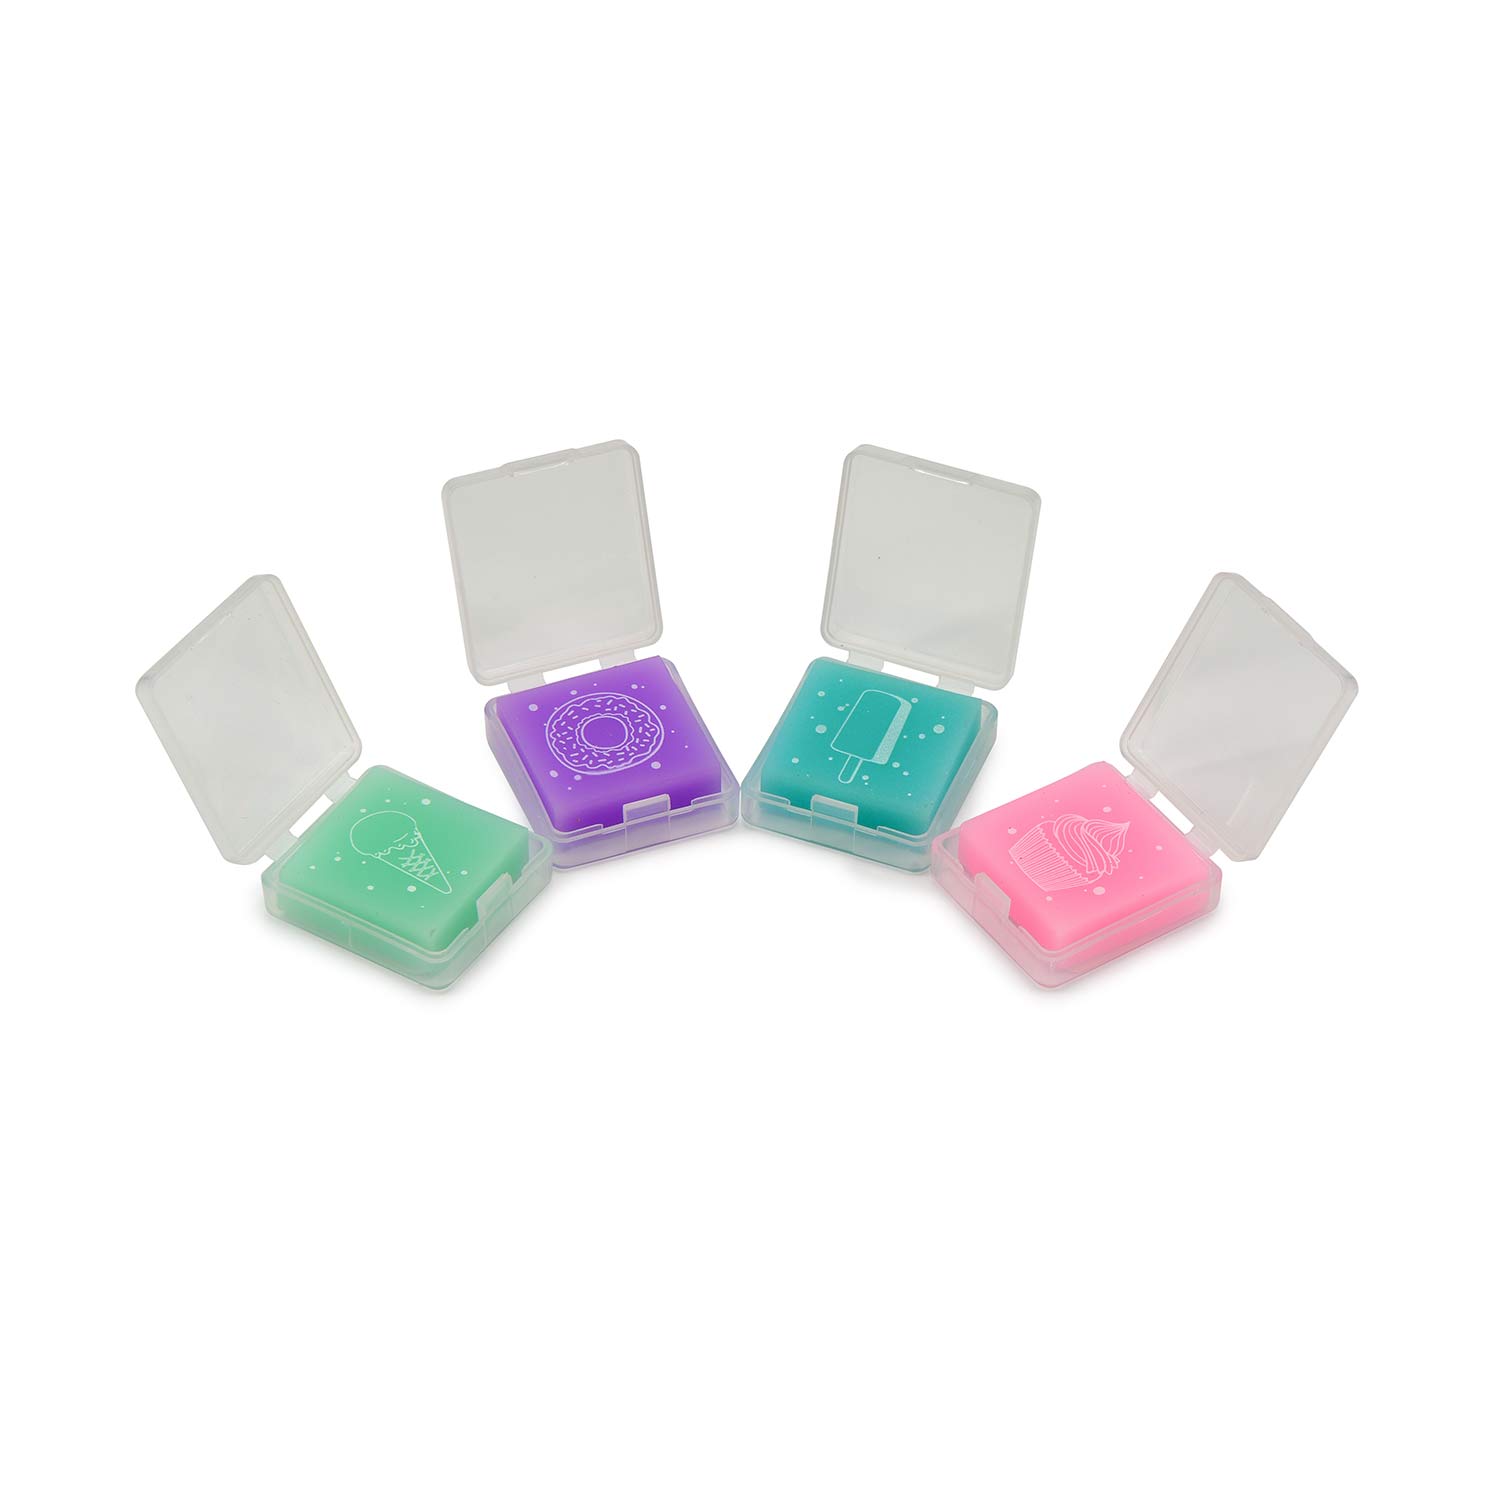 Ластик "HappyGraphix Zefir", квадратный, в пластиковой коробочке, 4 цвета - купить в магазине Кассандра, фото, 4606016403536, 